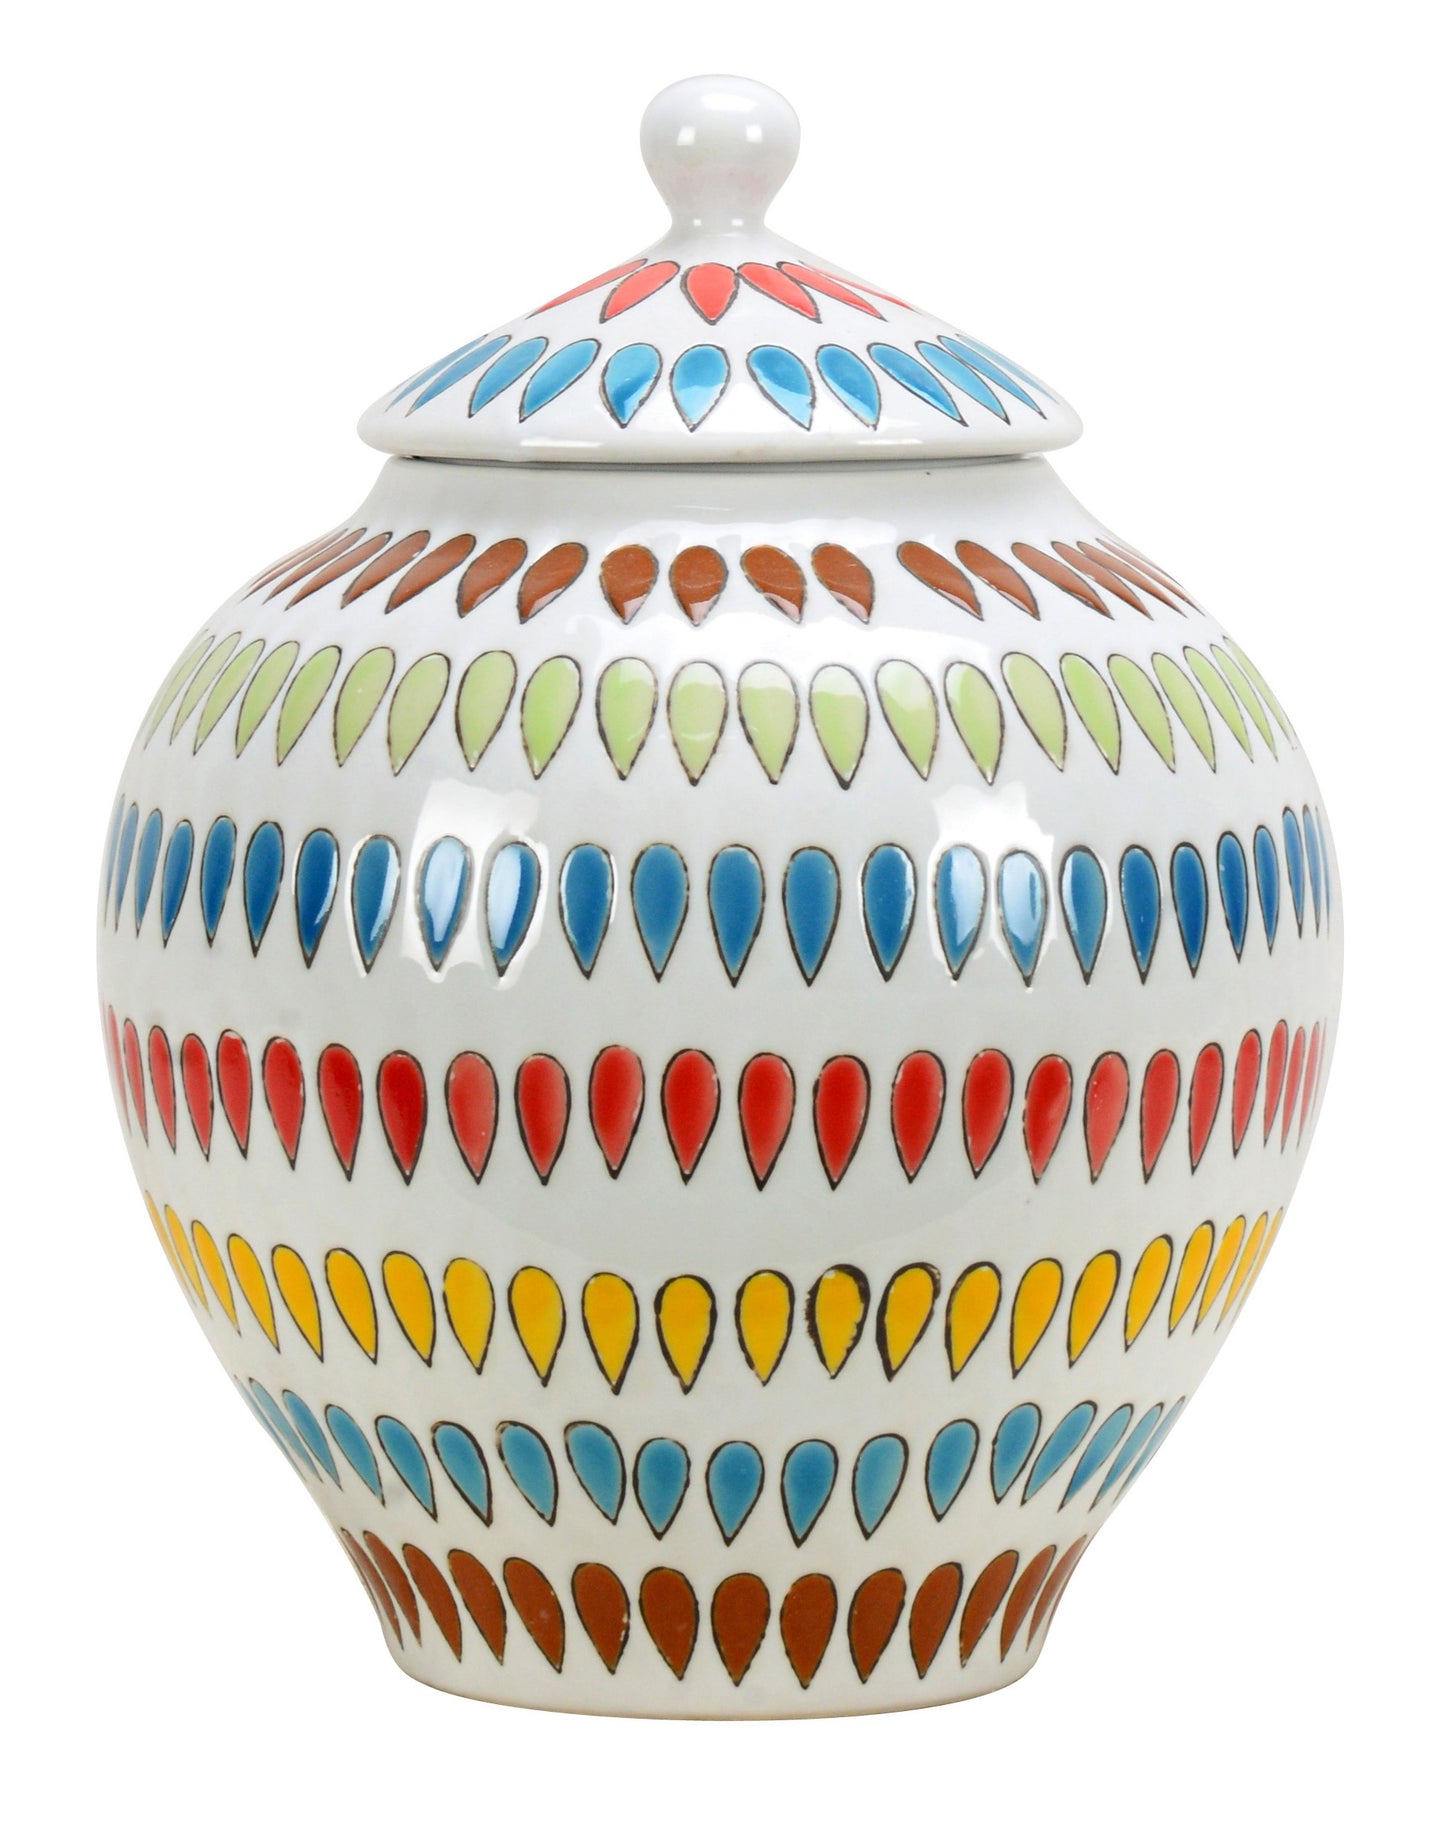 Colorful Round Ceramic Ginger Jar - 33cm